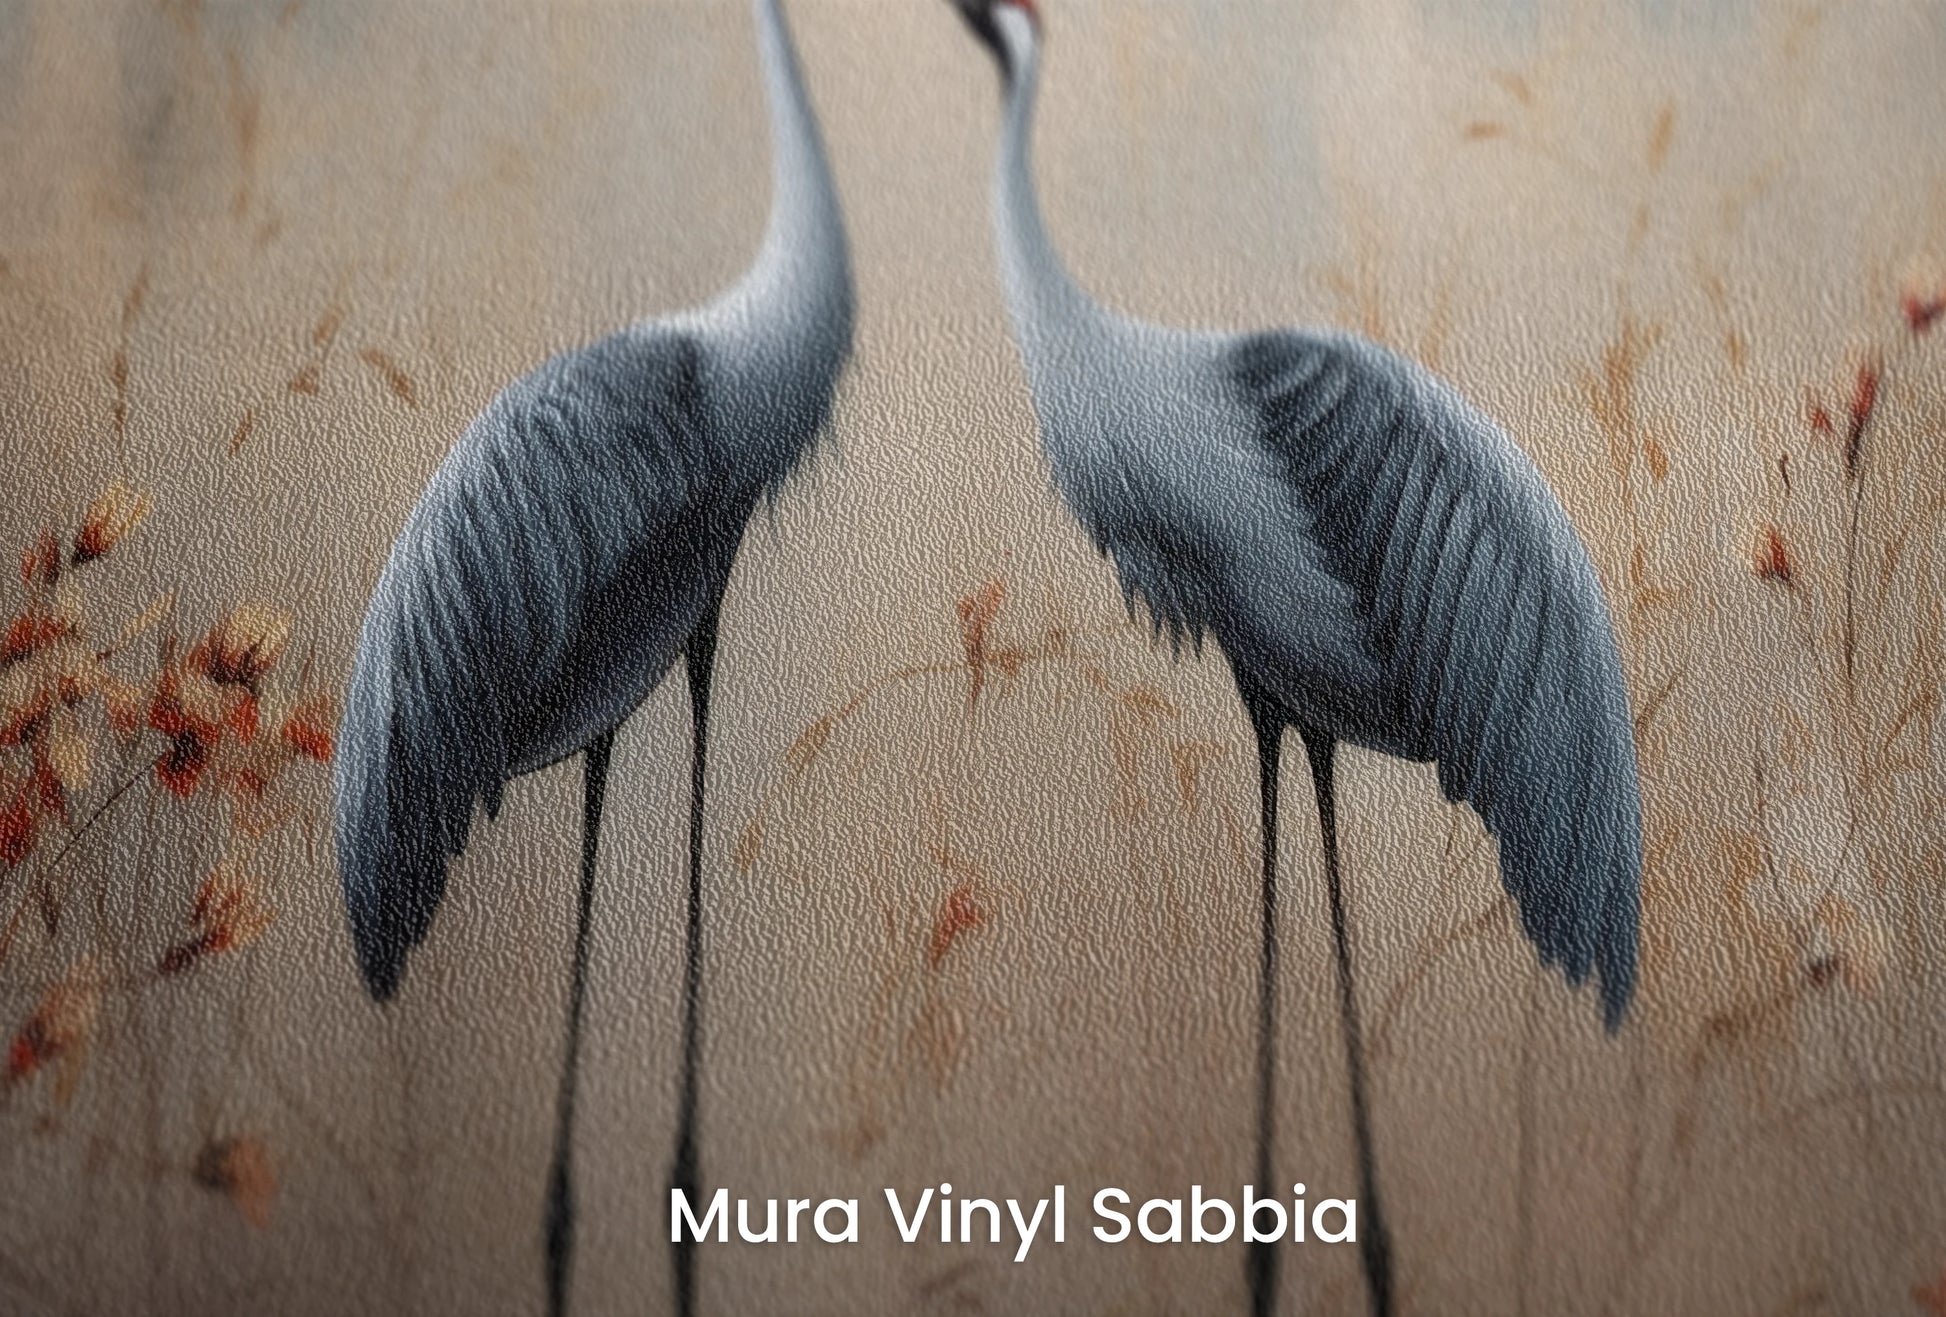 Zbliżenie na artystyczną fototapetę o nazwie Rustic Serenity na podłożu Mura Vinyl Sabbia struktura grubego ziarna piasku.